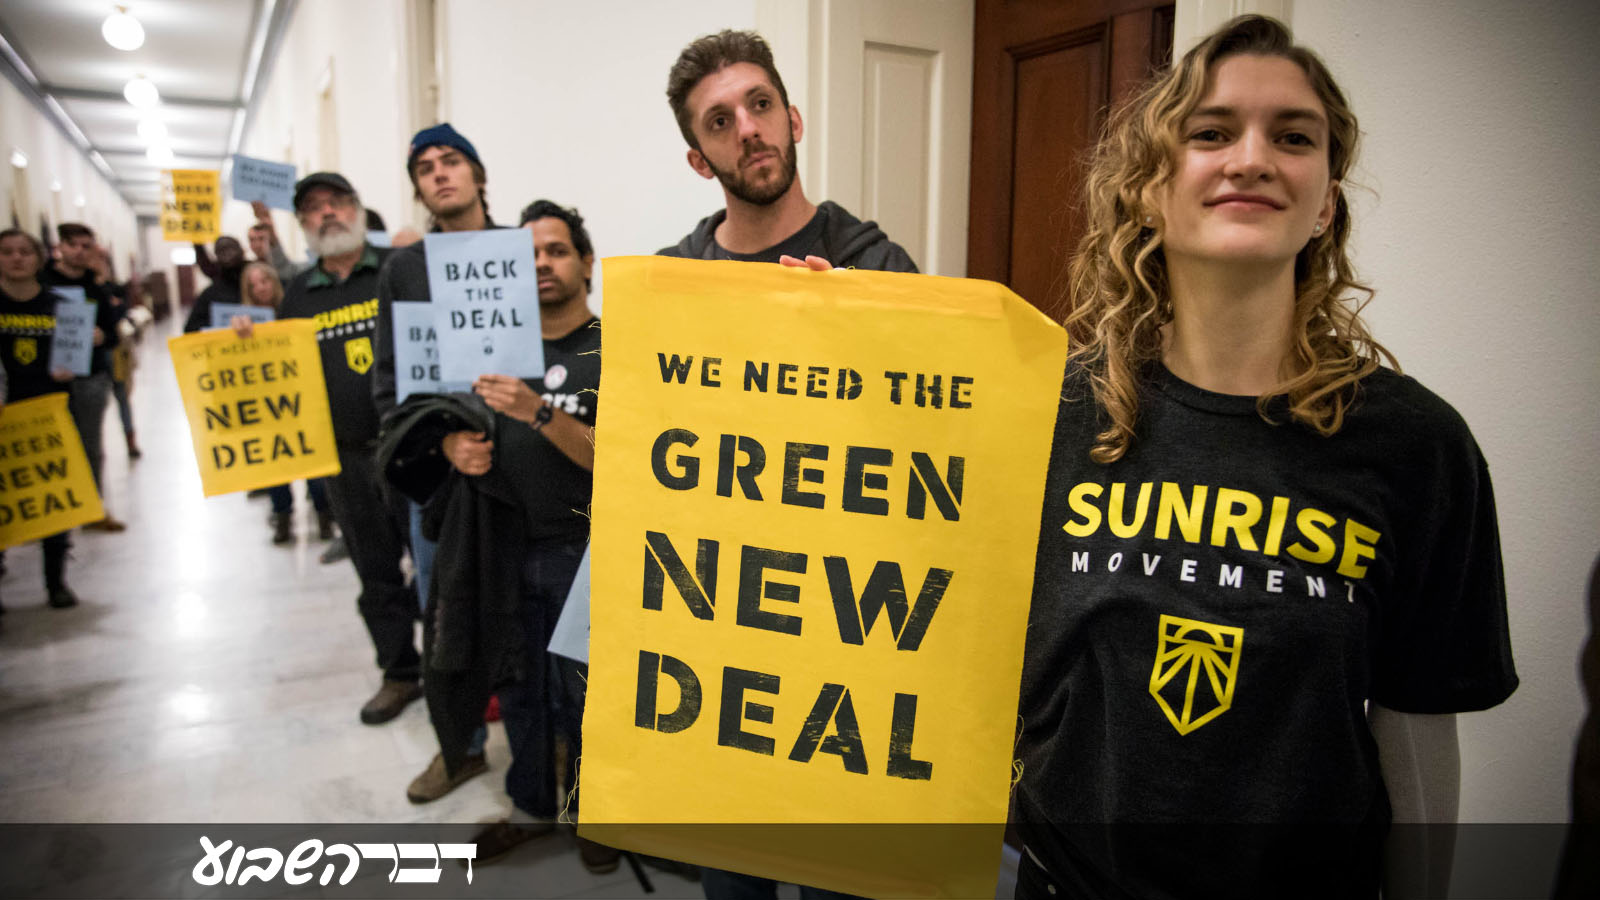 הפגנהה של תנועת 'Sunrise" במשרדי חברי קונגרס דמוקרטיים בדרישה לקדם ניו דיל ירוק. 12 בדצמבר 2018 (צילום: Rachael Warriner / Shutterstock.com)